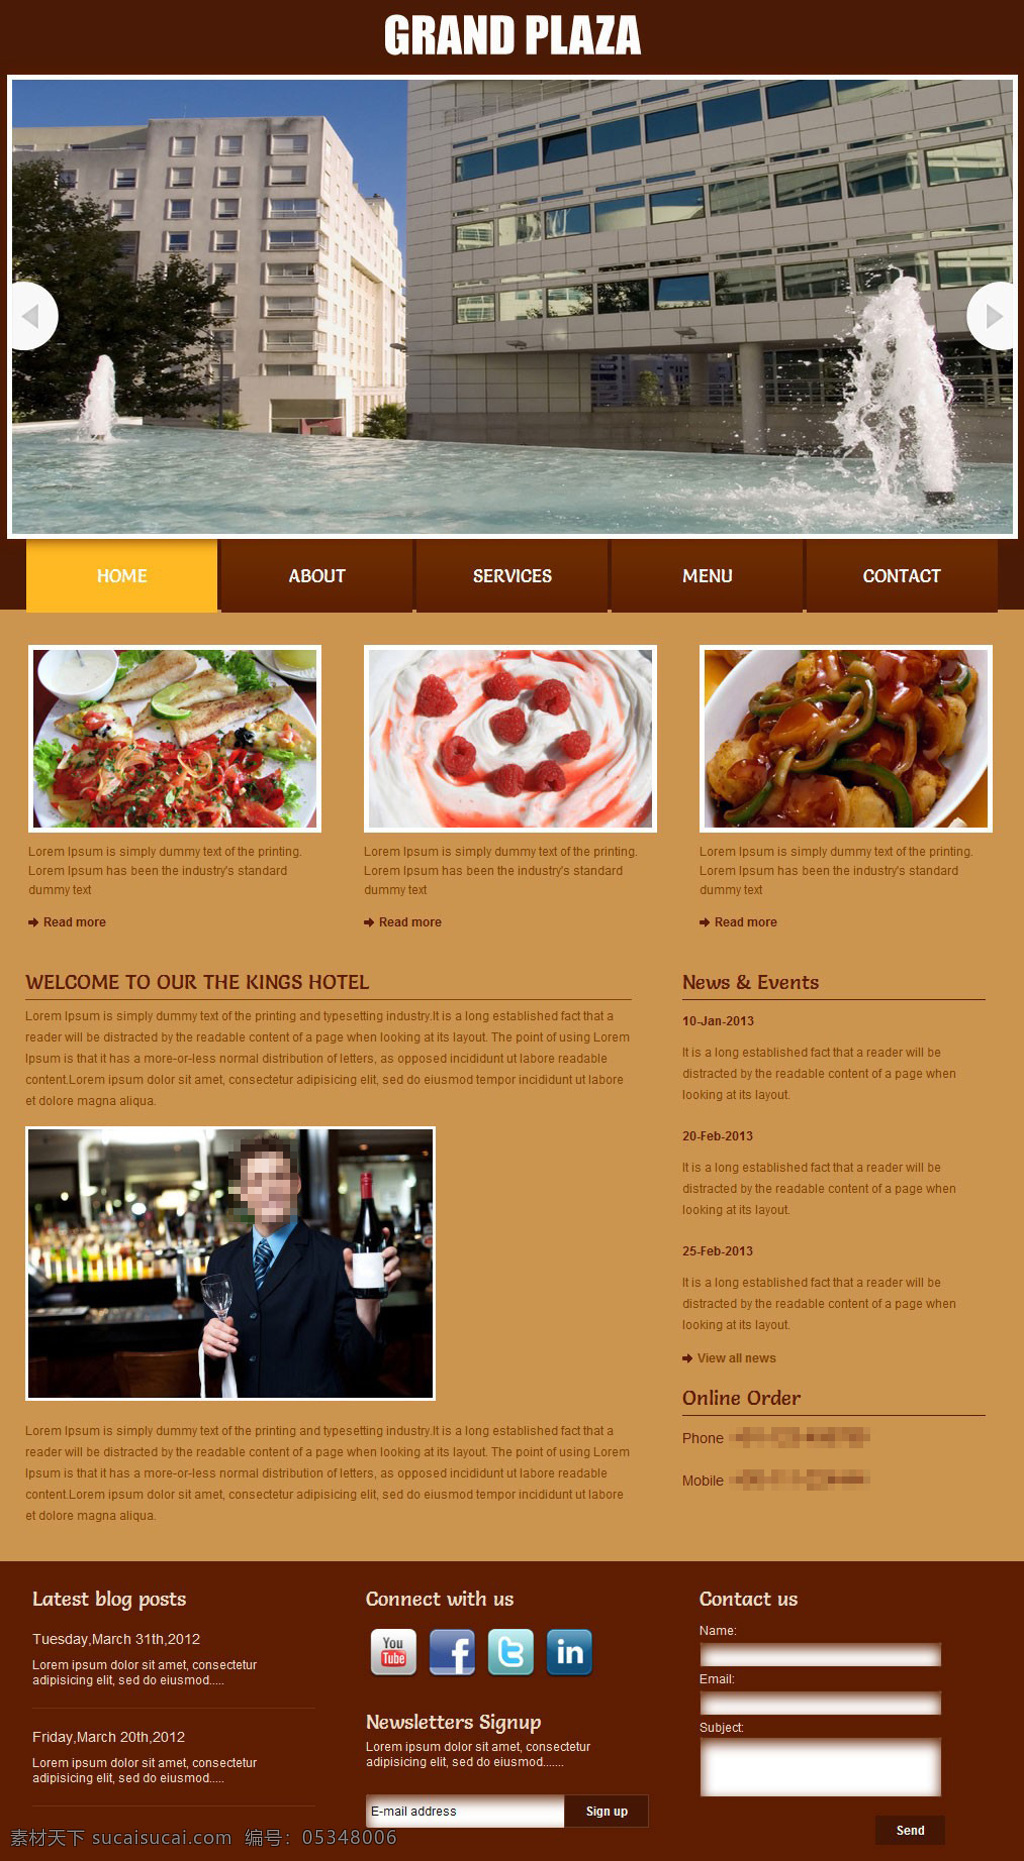 美食 广场 网页模板 欧美风格 html 网页设计 网站模板 网站设计 美食网站 响应式网页 响应式 美食网页 htmlcss 棕色